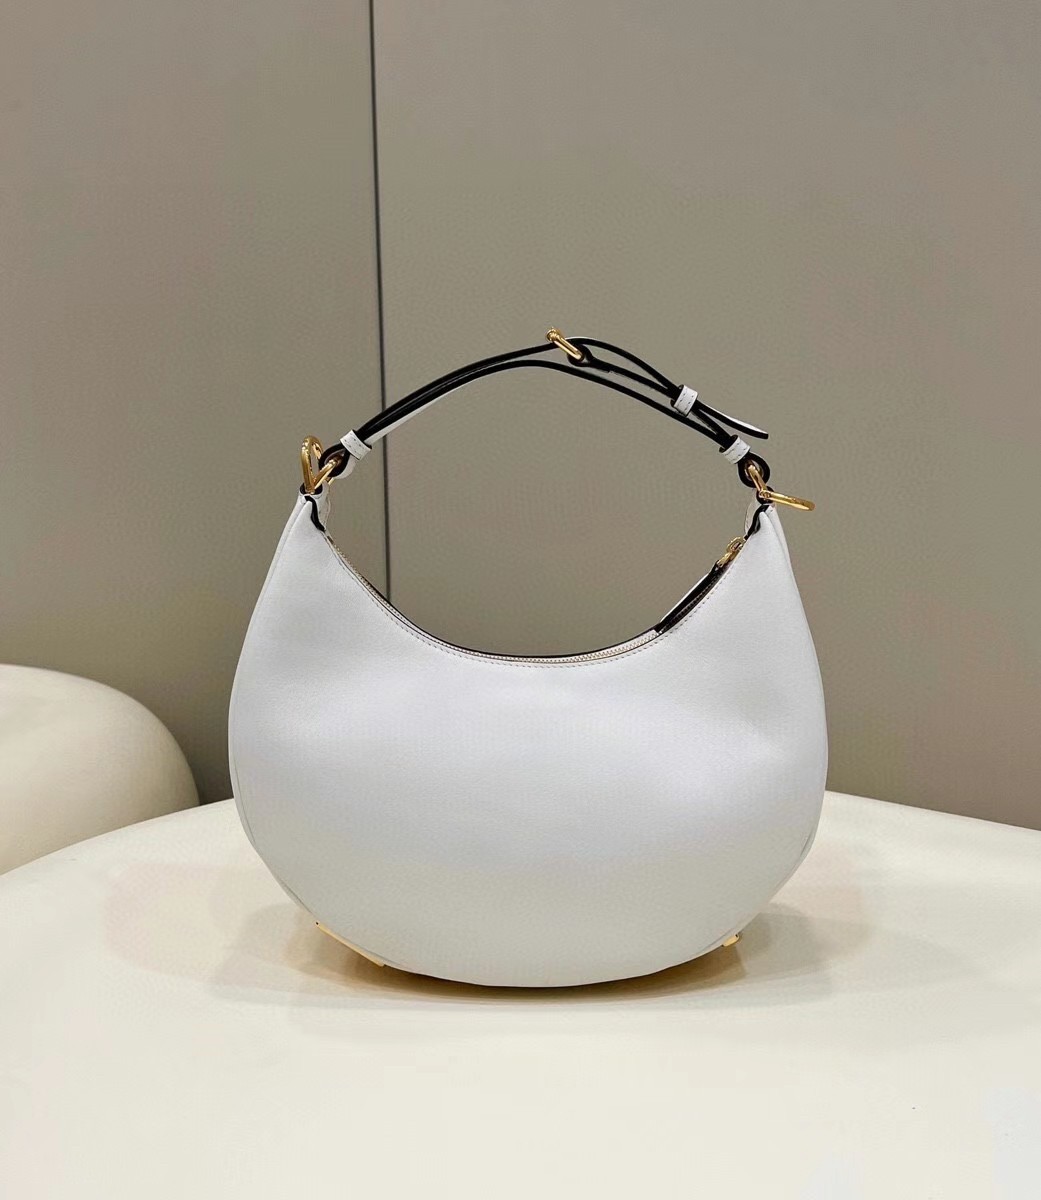 Replica Fendi Fendigraphy Small Hobo Bag In White Leather